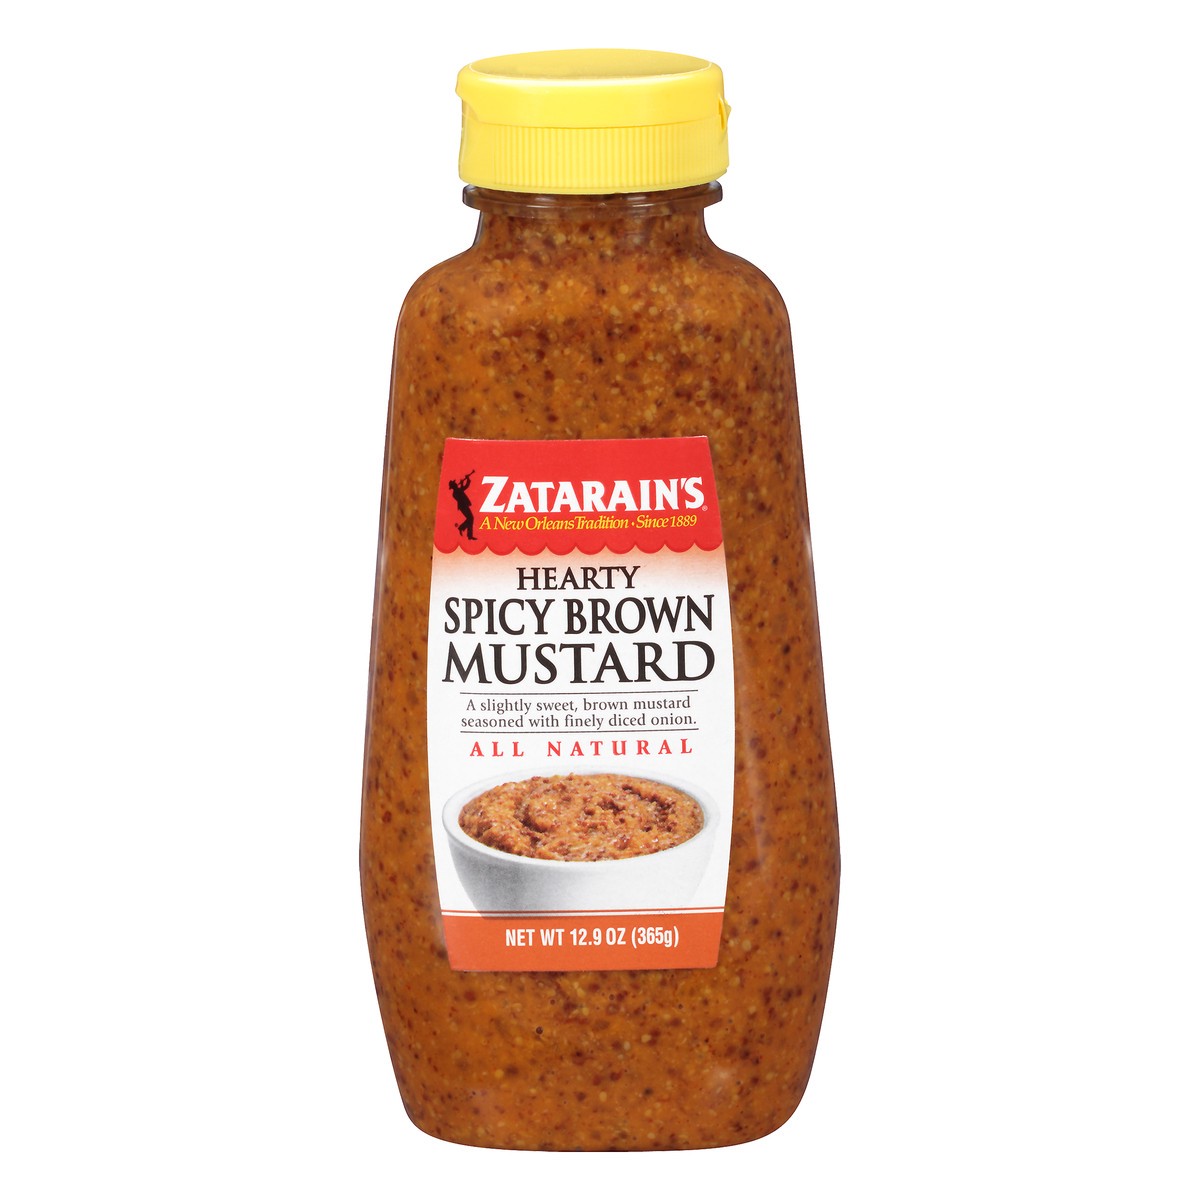 slide 1 of 10, Zatarain's Mustard Hearty Spicy Brown Mustard, 12.9 Oz, 12.9 oz